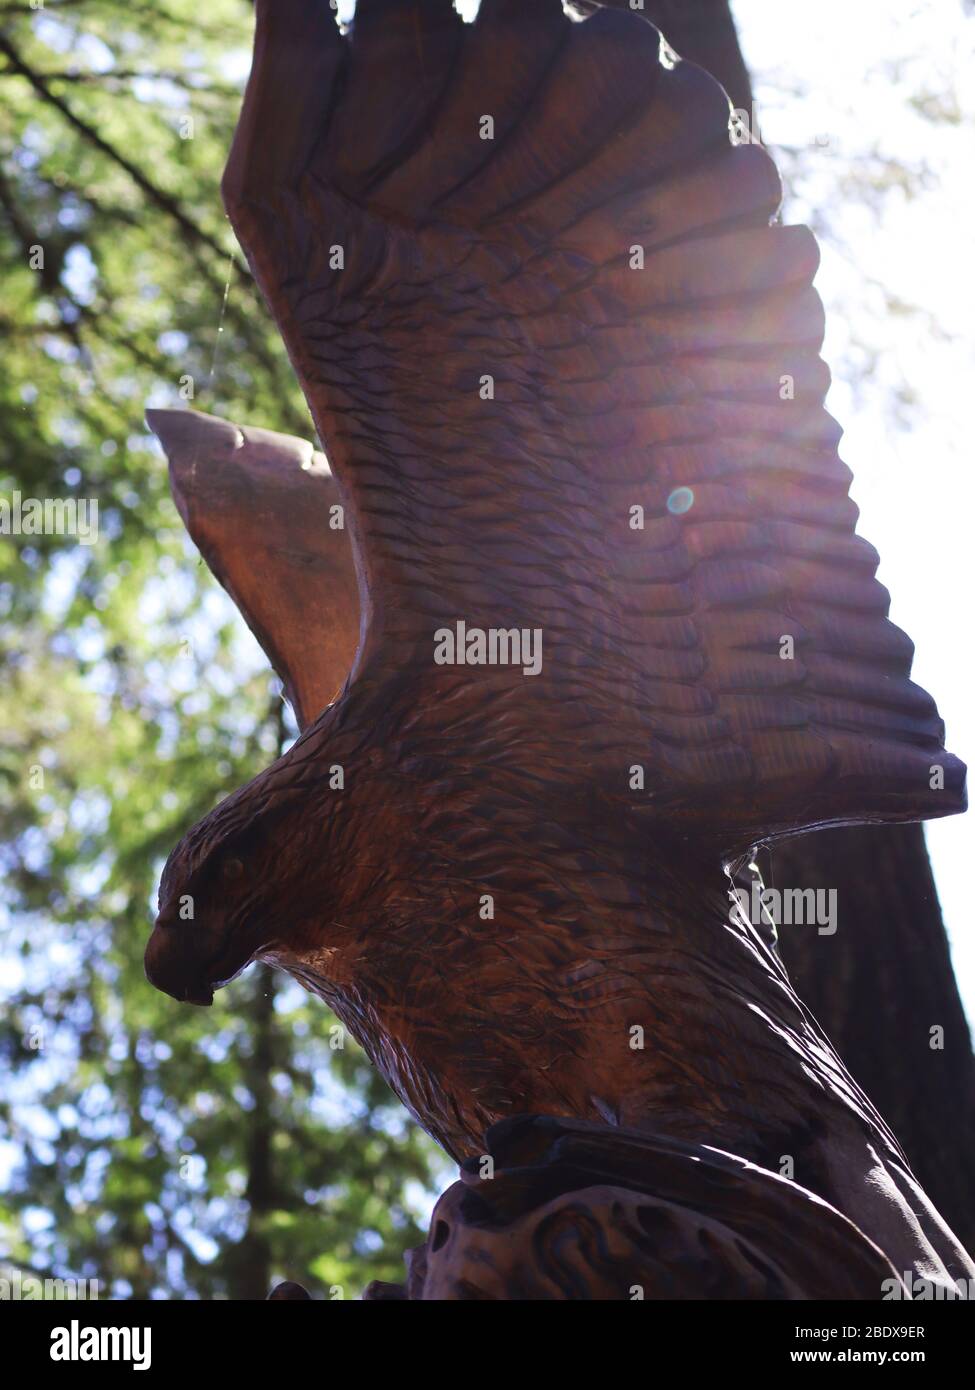 soaring eagle Stock Photo